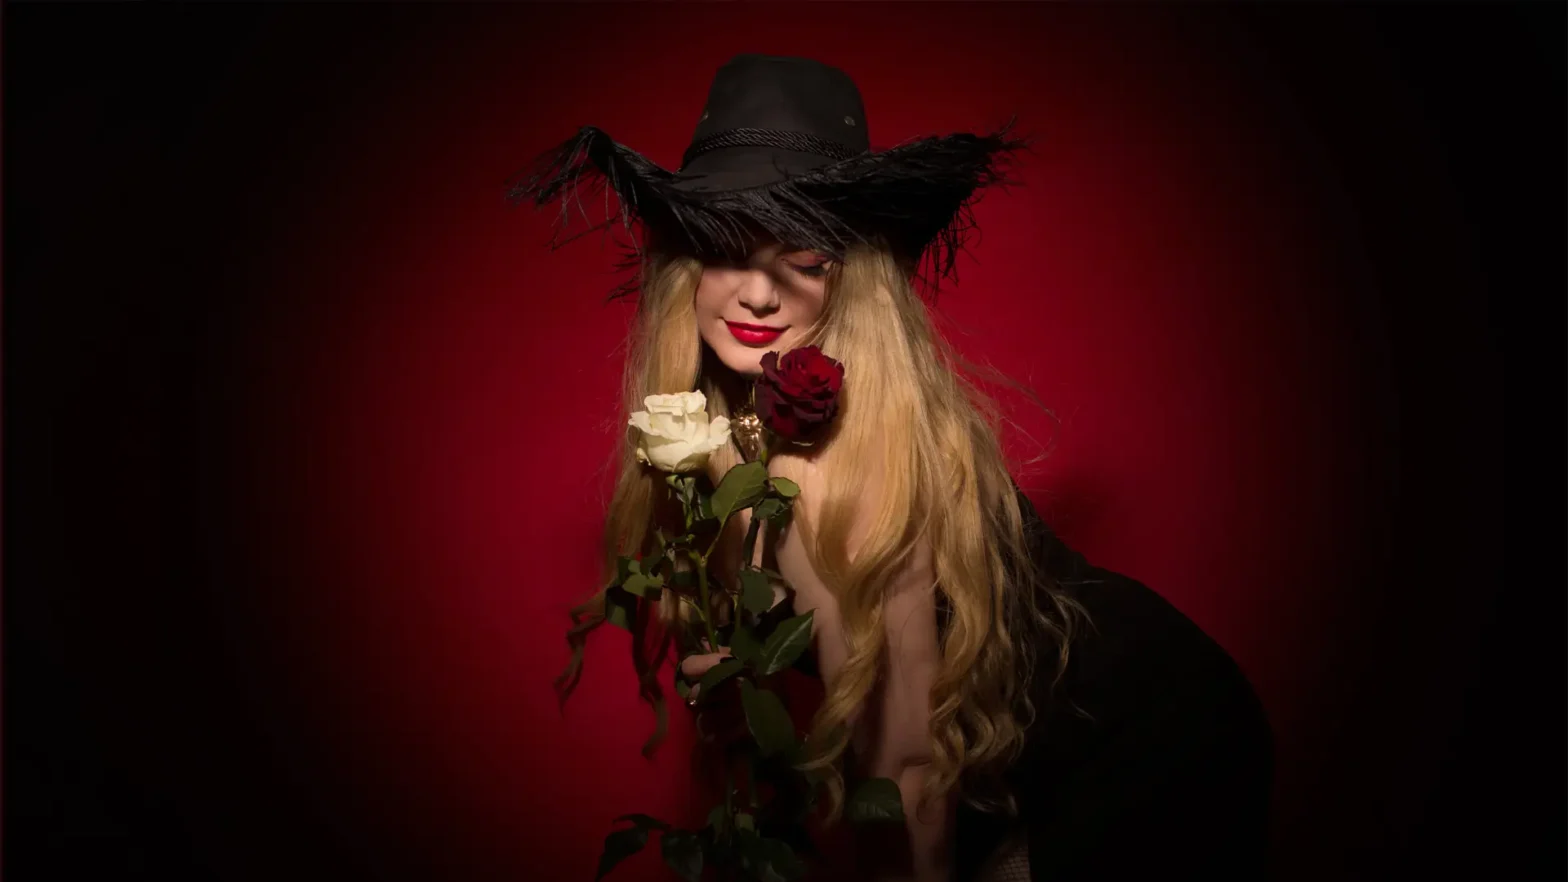 Na zdjęciu blond włosa kobieta. Na głowie ma czarny kapelusz, w ręku trzyma dwie róże. Jedna jest koloru białego, a druga czerwonego. Kobieta ma usta pomalowane czerwoną szminką i spuszczony wzrok w dół. Tło zdjęcia jest czerwone i delikatnie wyciemnione.